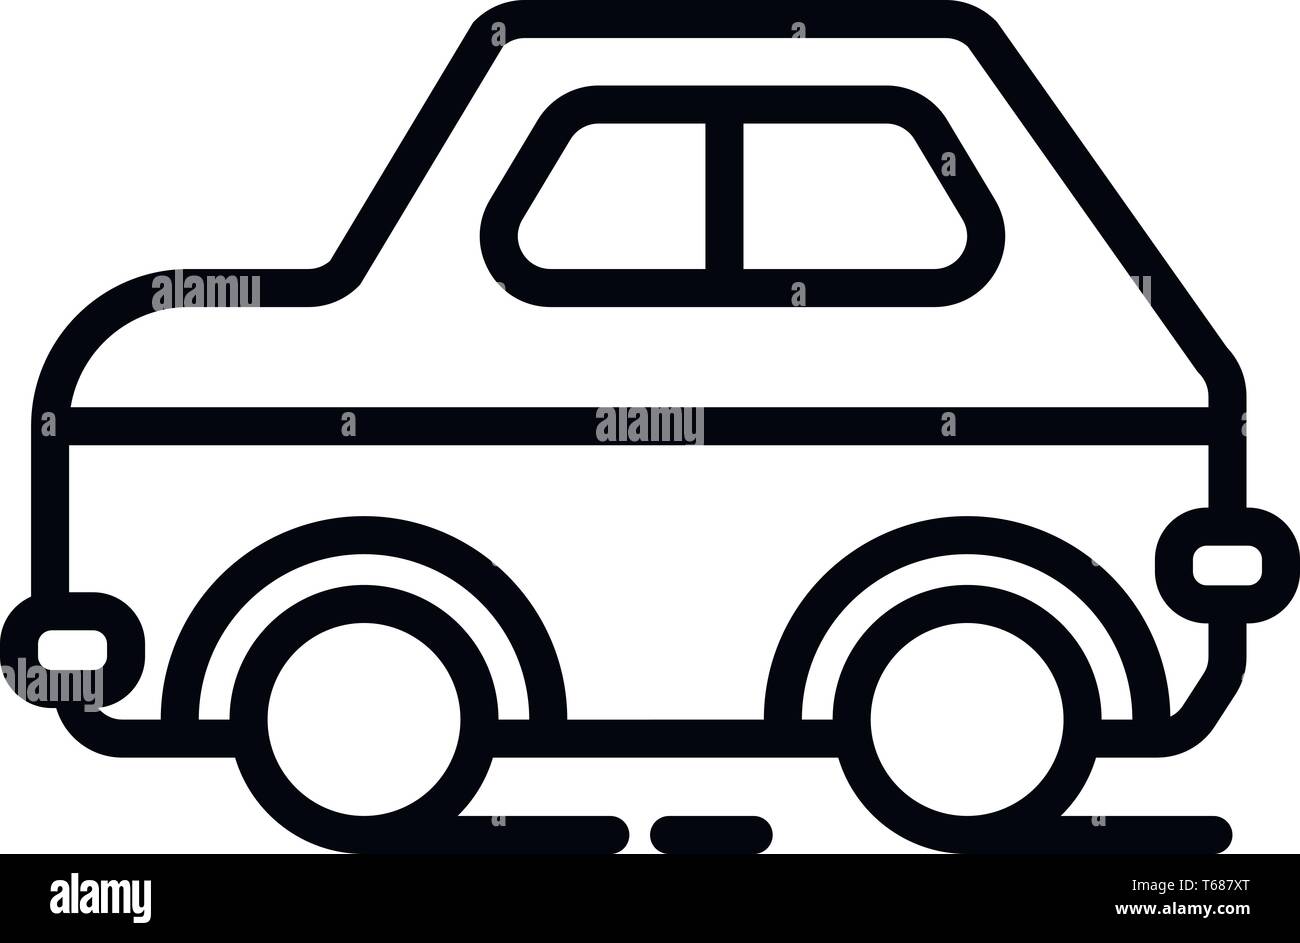 Dieser Vektor Bild zeigt ein Auto Symbol in Glyph Stil. Es ist auf einem weißen Hintergrund. Stock Vektor